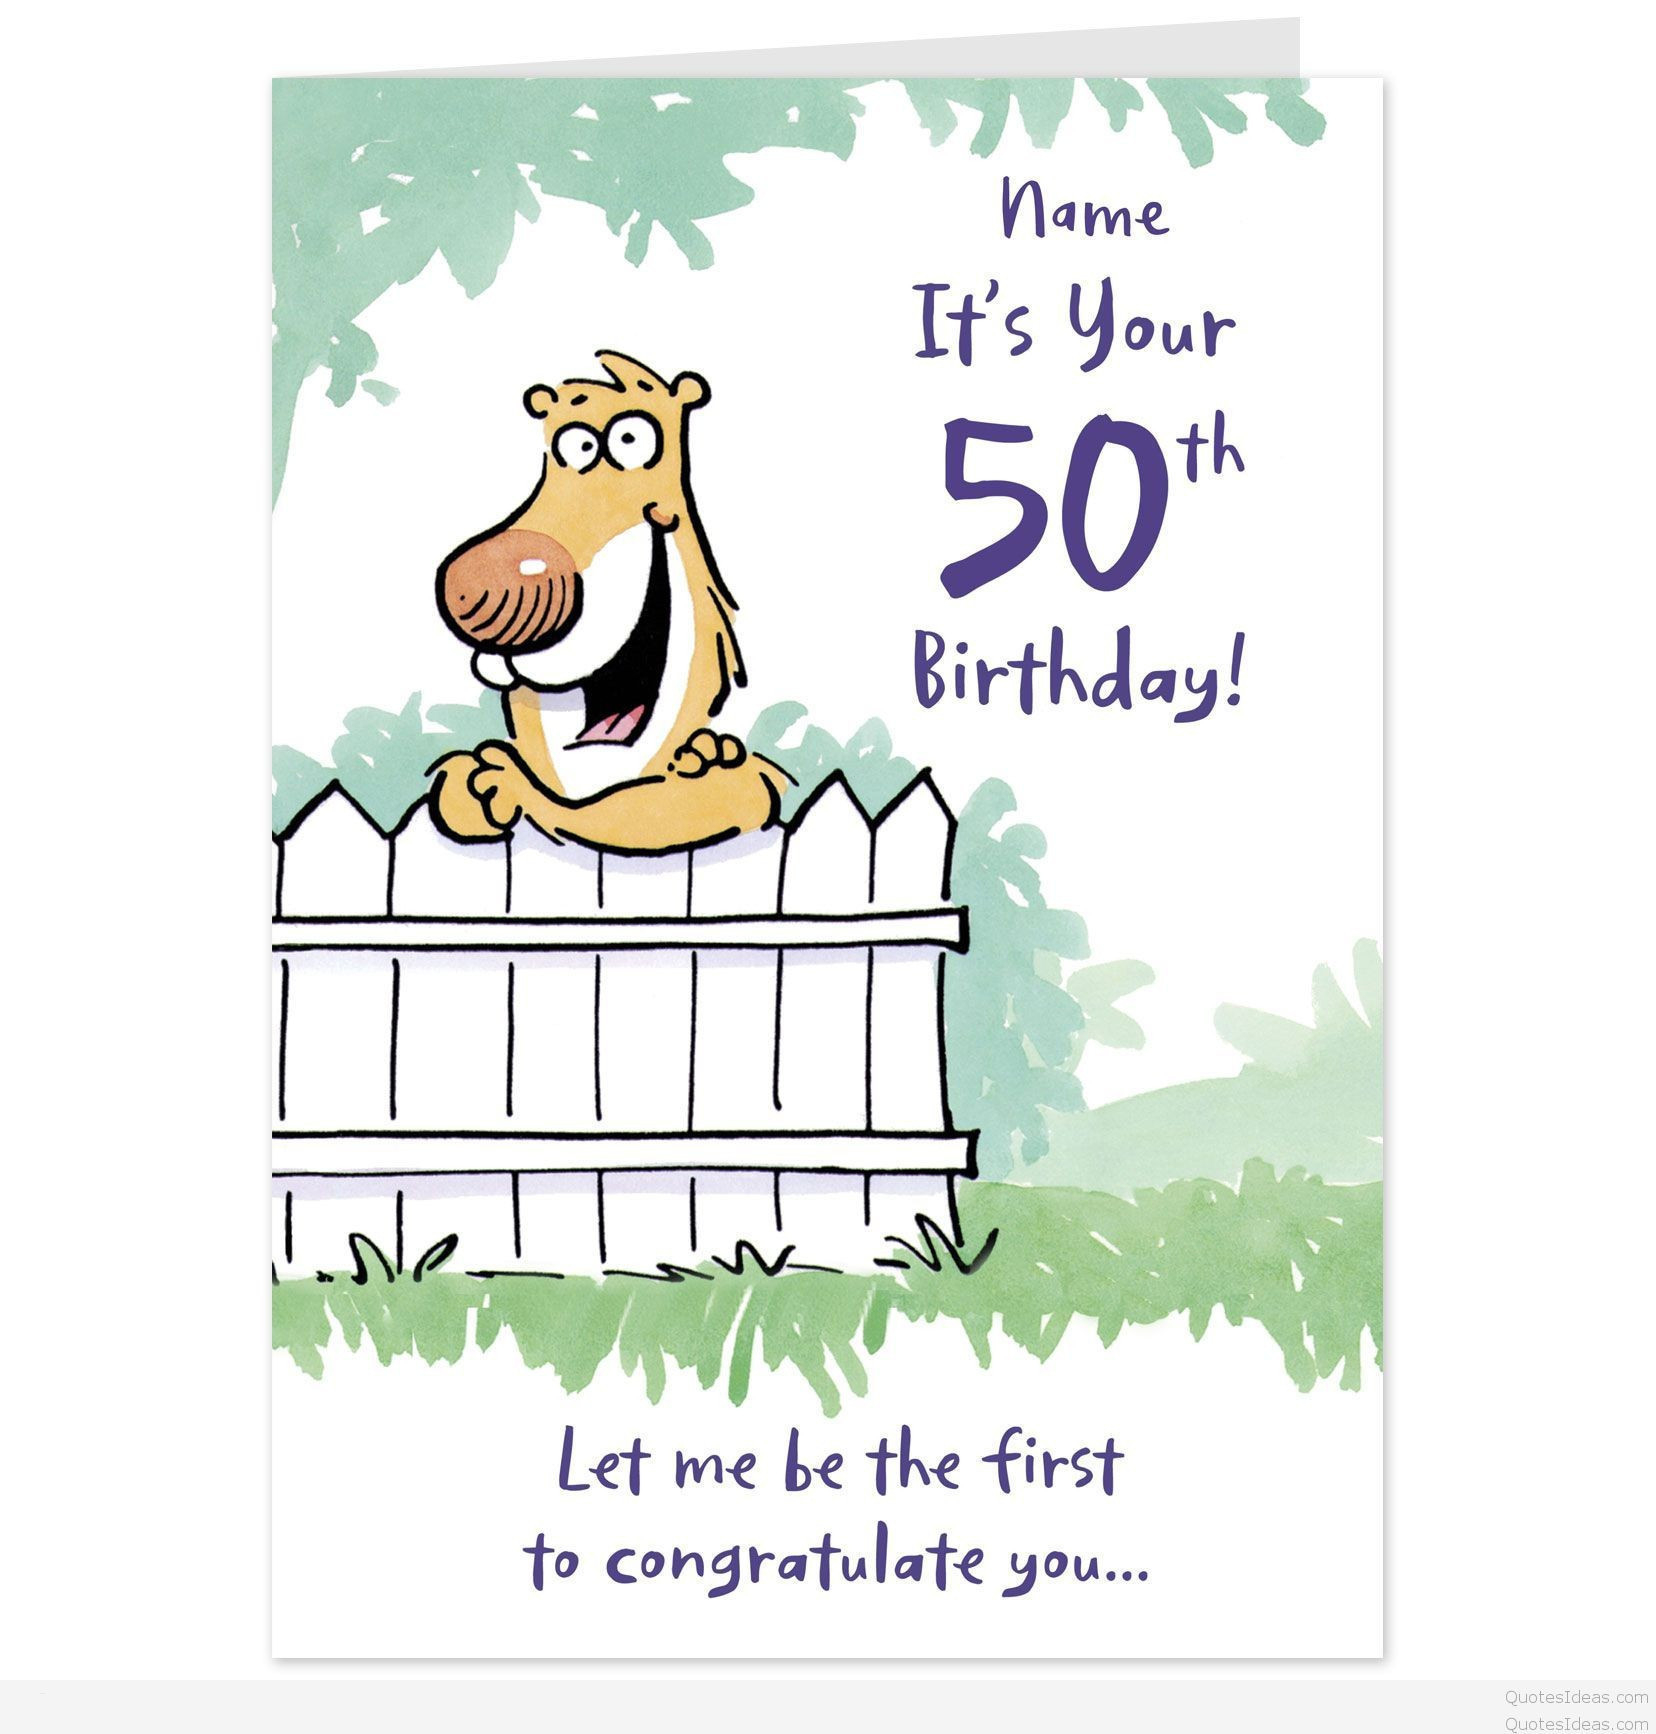 Birthday Card Ideas For Best Friend Funny Birthday Greeting Card For Best Friend Funny Best Friend Birthday